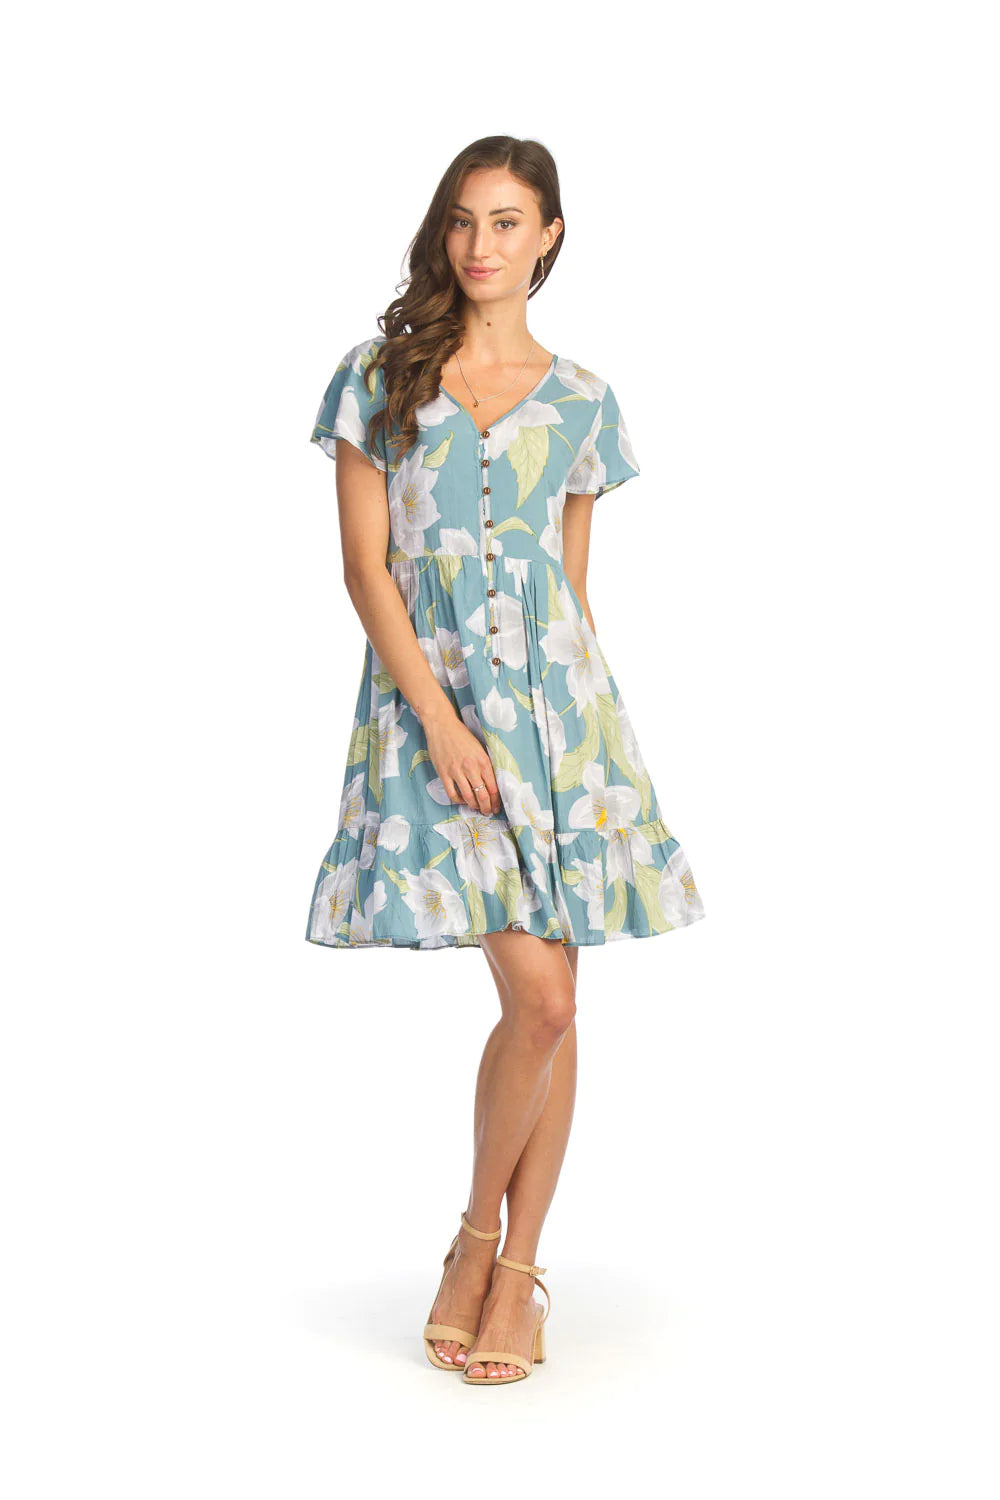 SALE Papillon PD14719 Floral Button Up Front Dress